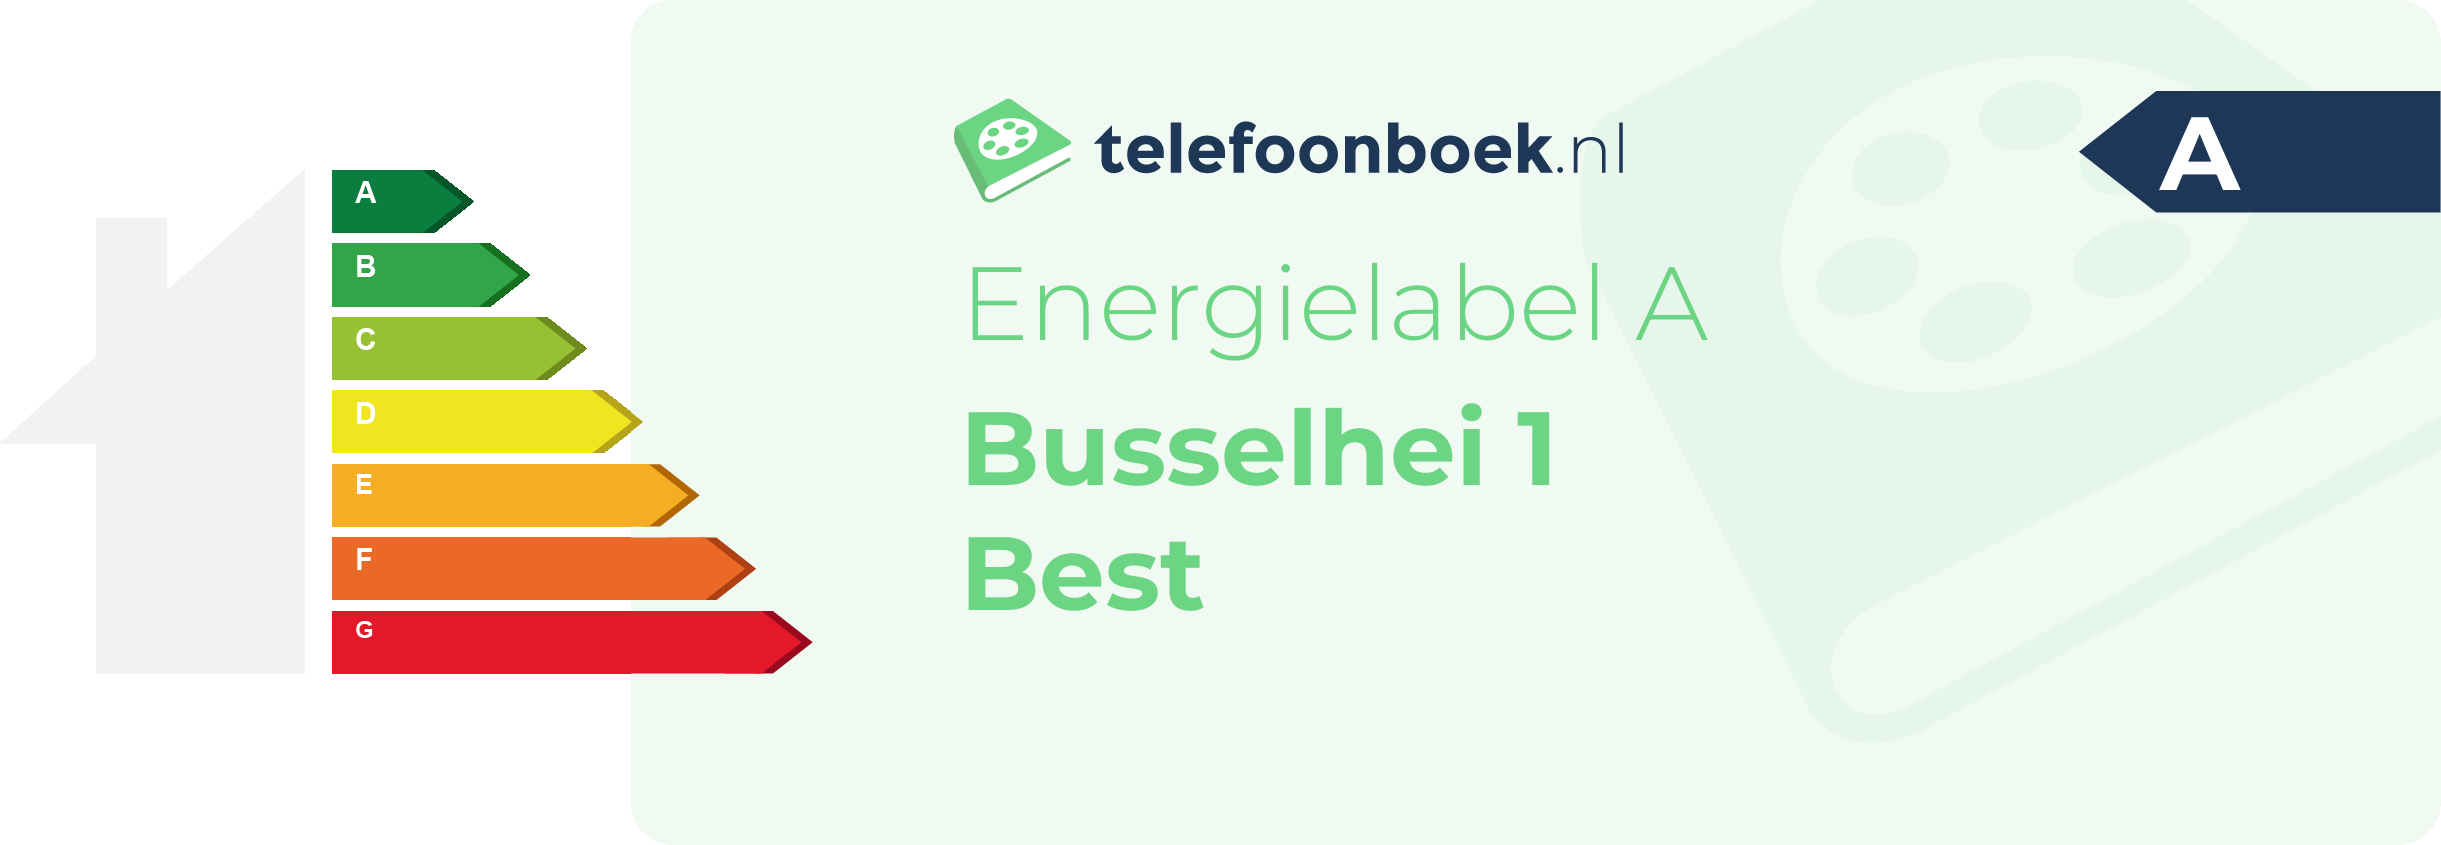 Energielabel Busselhei 1 Best